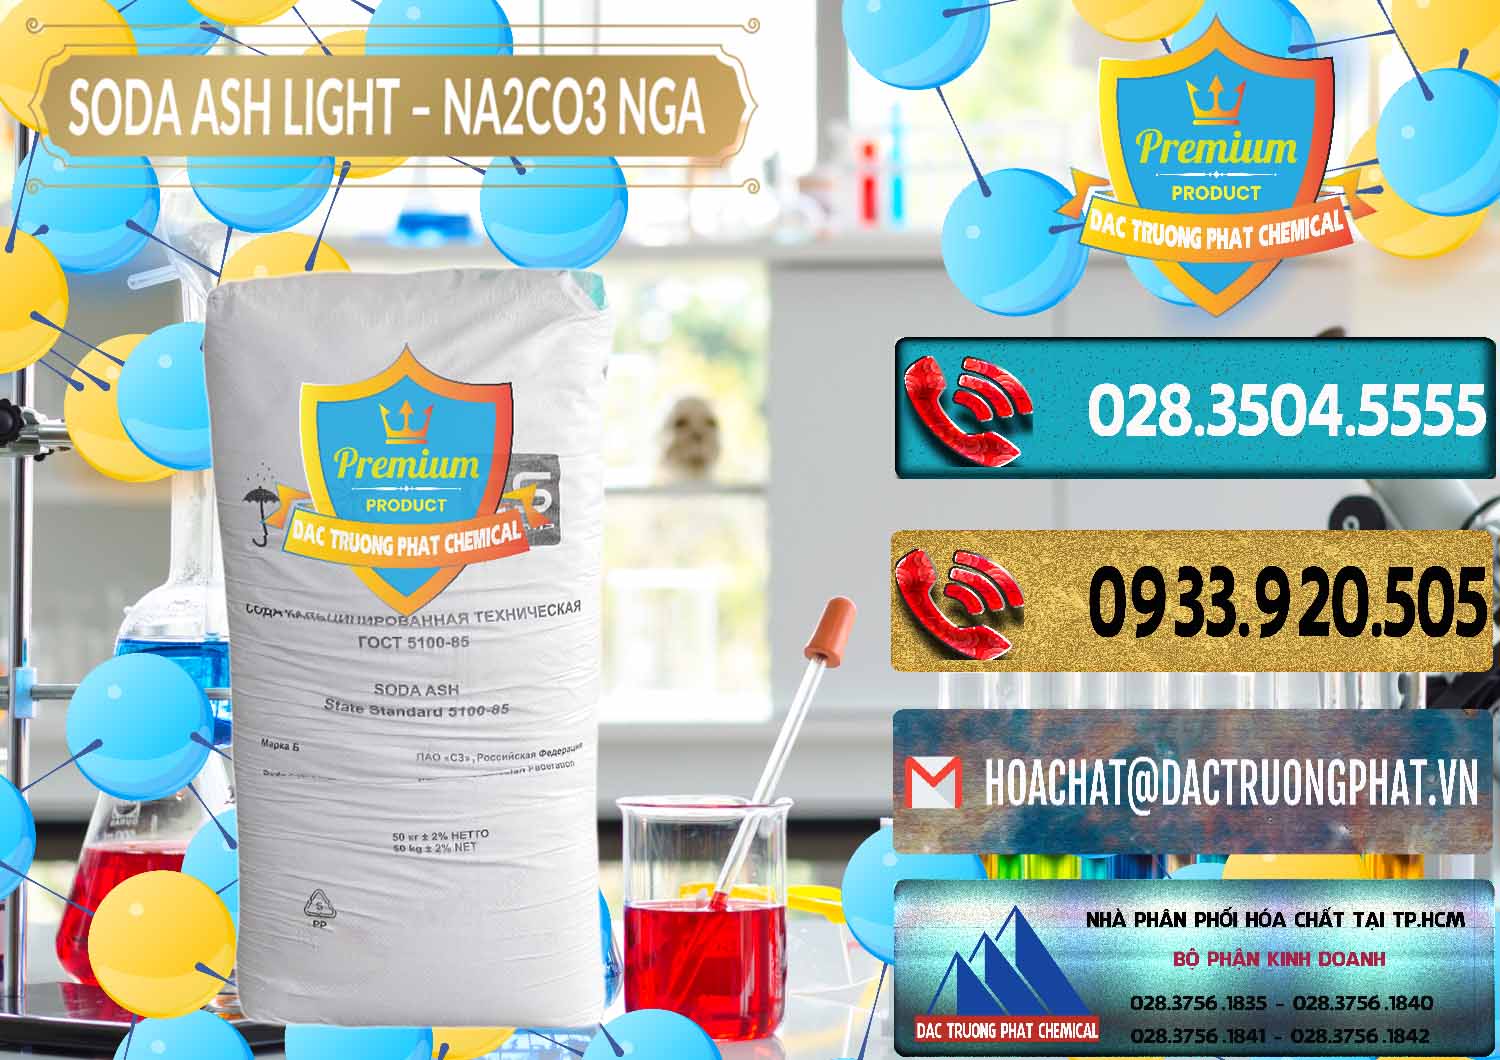 Chuyên bán và phân phối Soda Ash Light - NA2CO3 Nga Russia - 0128 - Chuyên bán _ phân phối hóa chất tại TP.HCM - hoachatdetnhuom.com